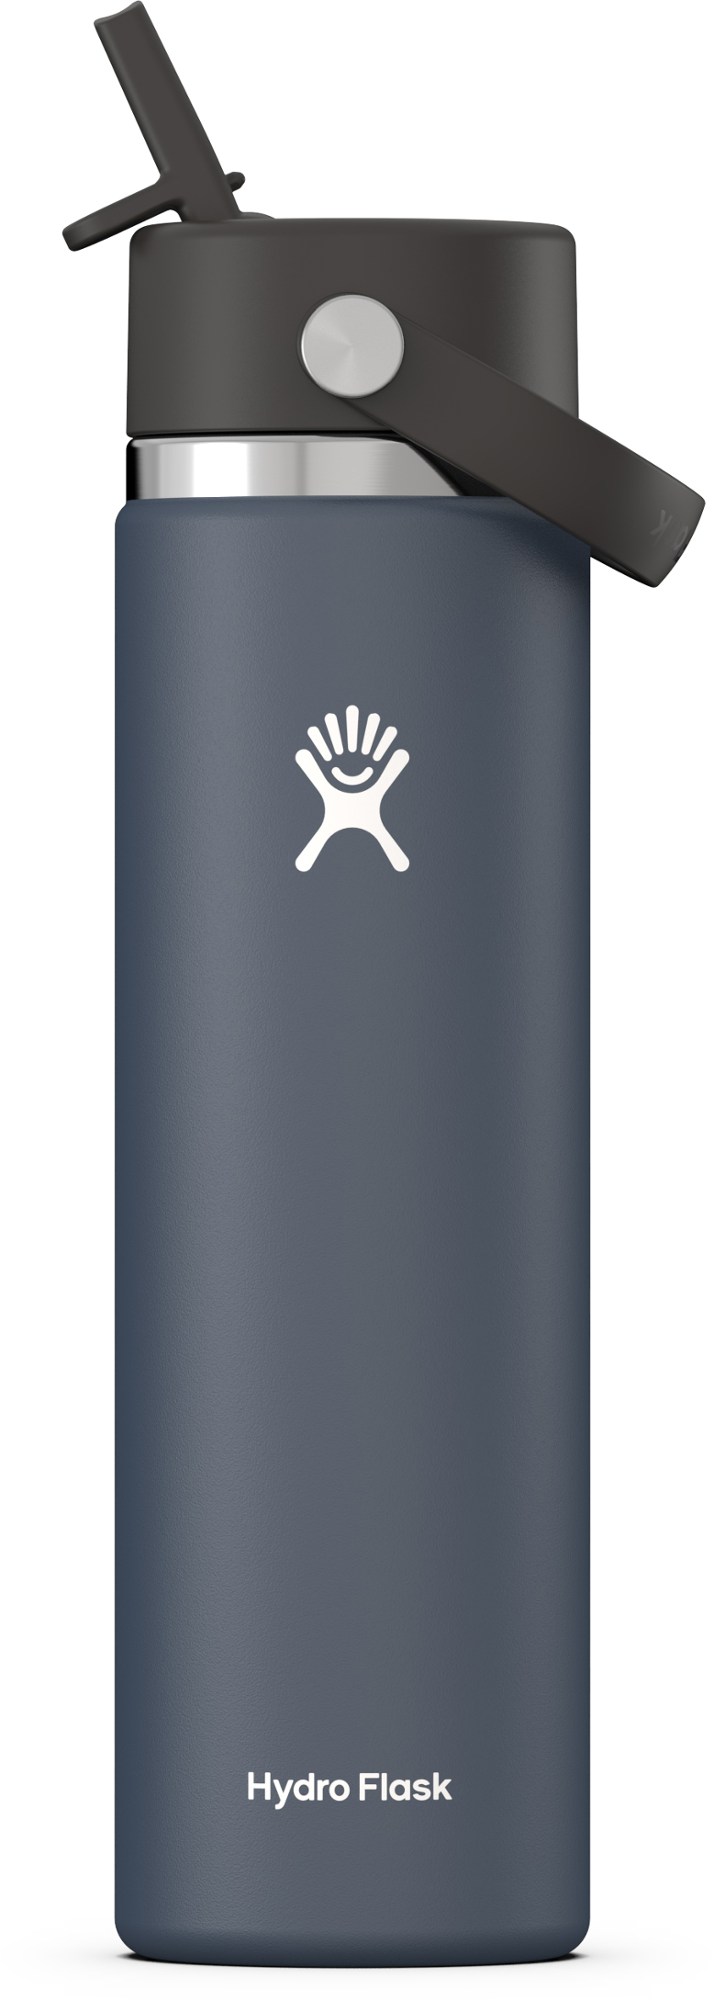 Вакуумная бутылка для воды с широким горлышком и гибкой соломенной крышкой — 24 эт. унция Hydro Flask, синий изолированный ланч бокс для молодежи hydro flask